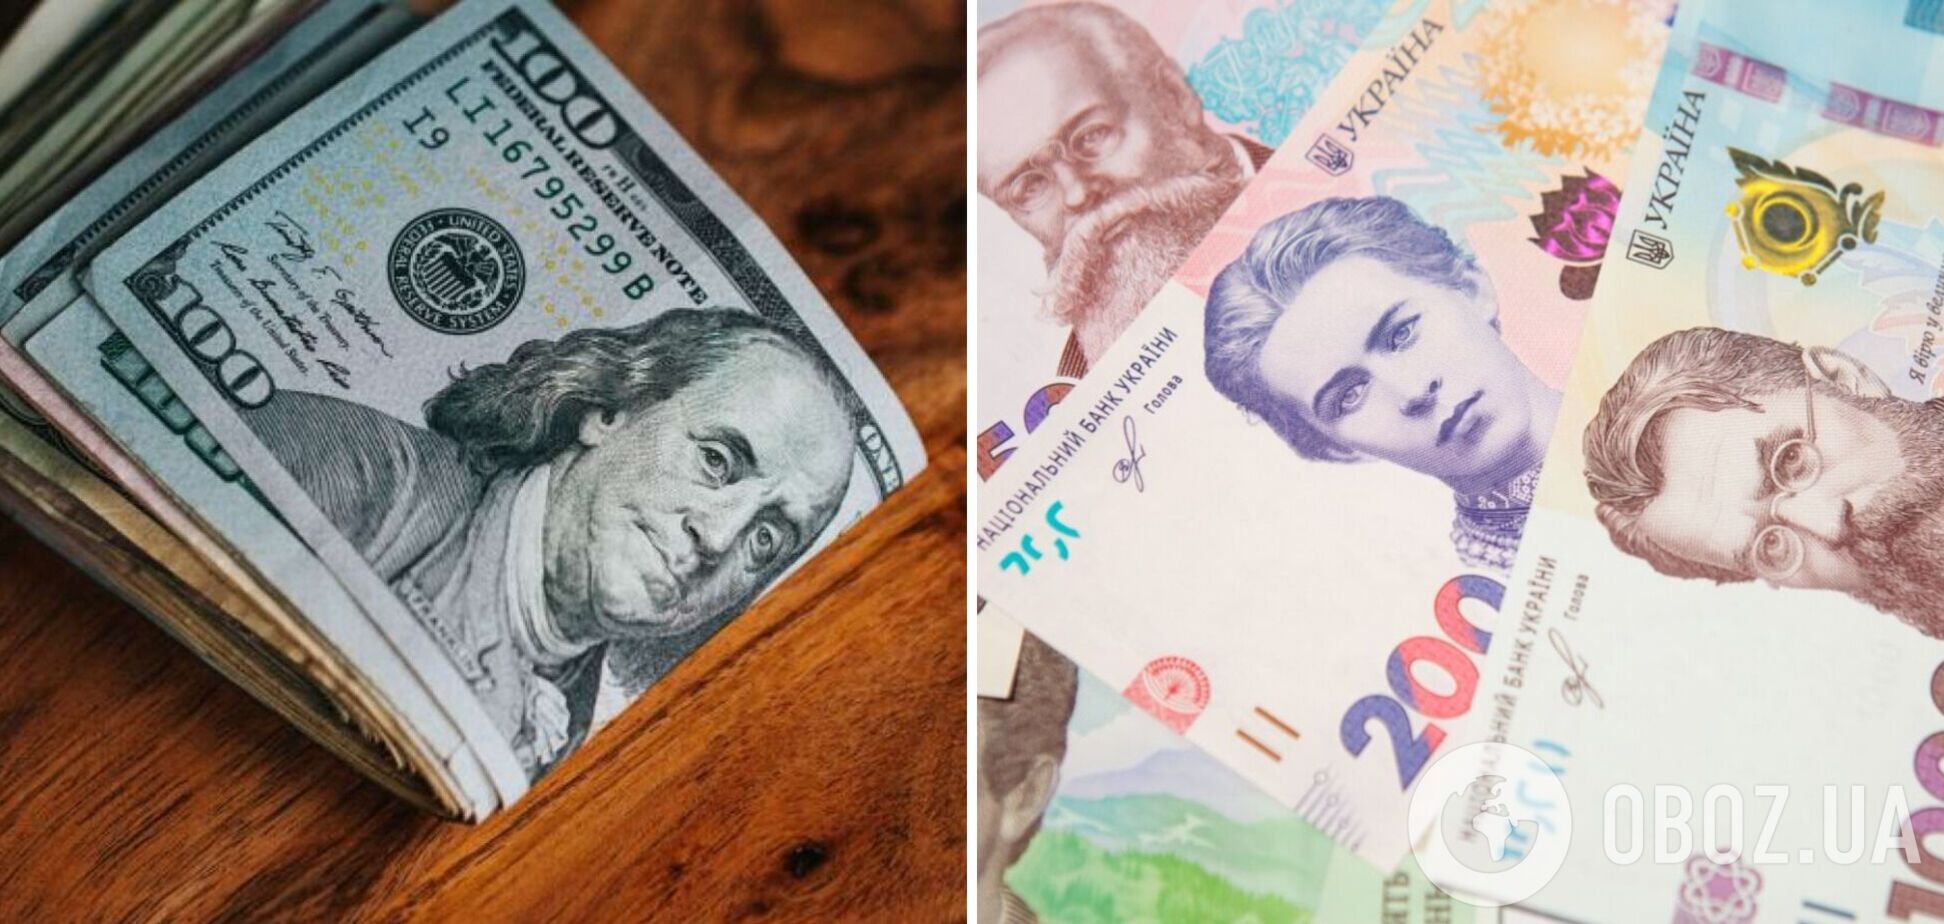 Доллар дорожает по всему миру, и в Украине тоже